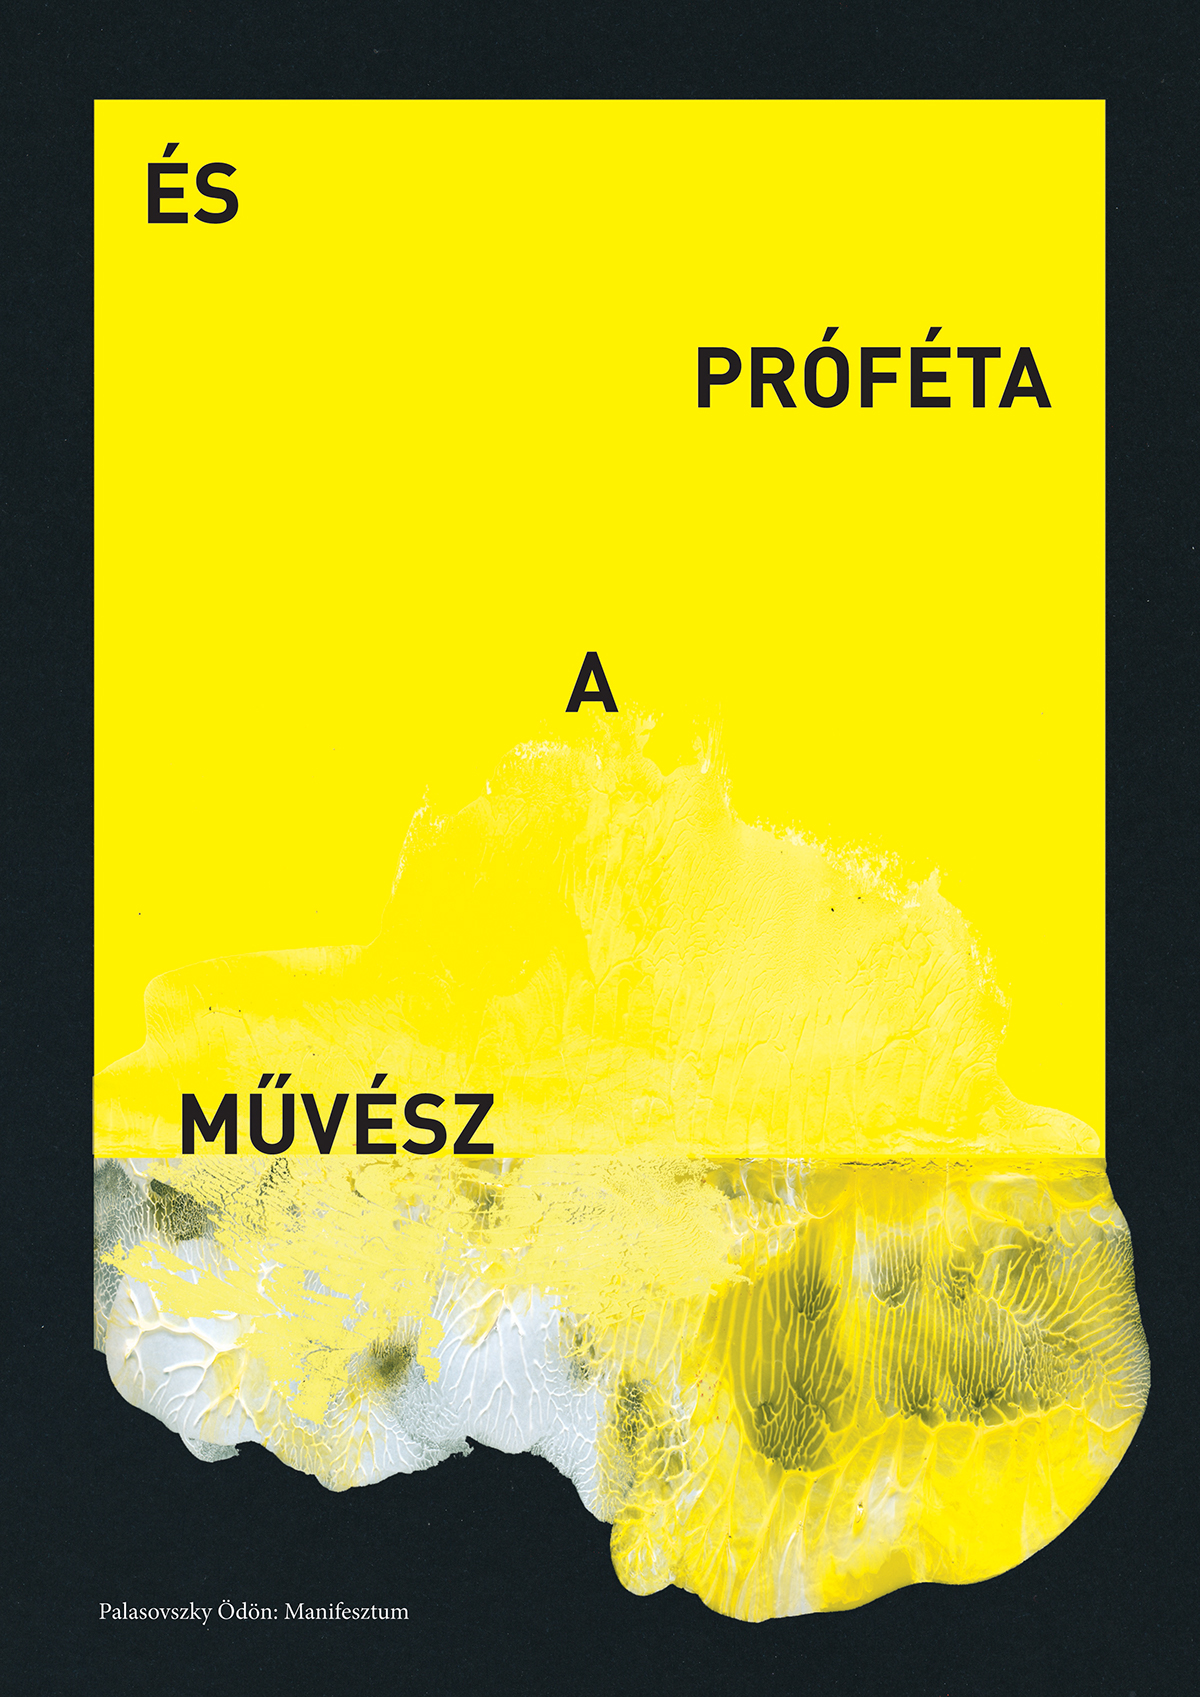 palasovszky ödön manifesztum book poster